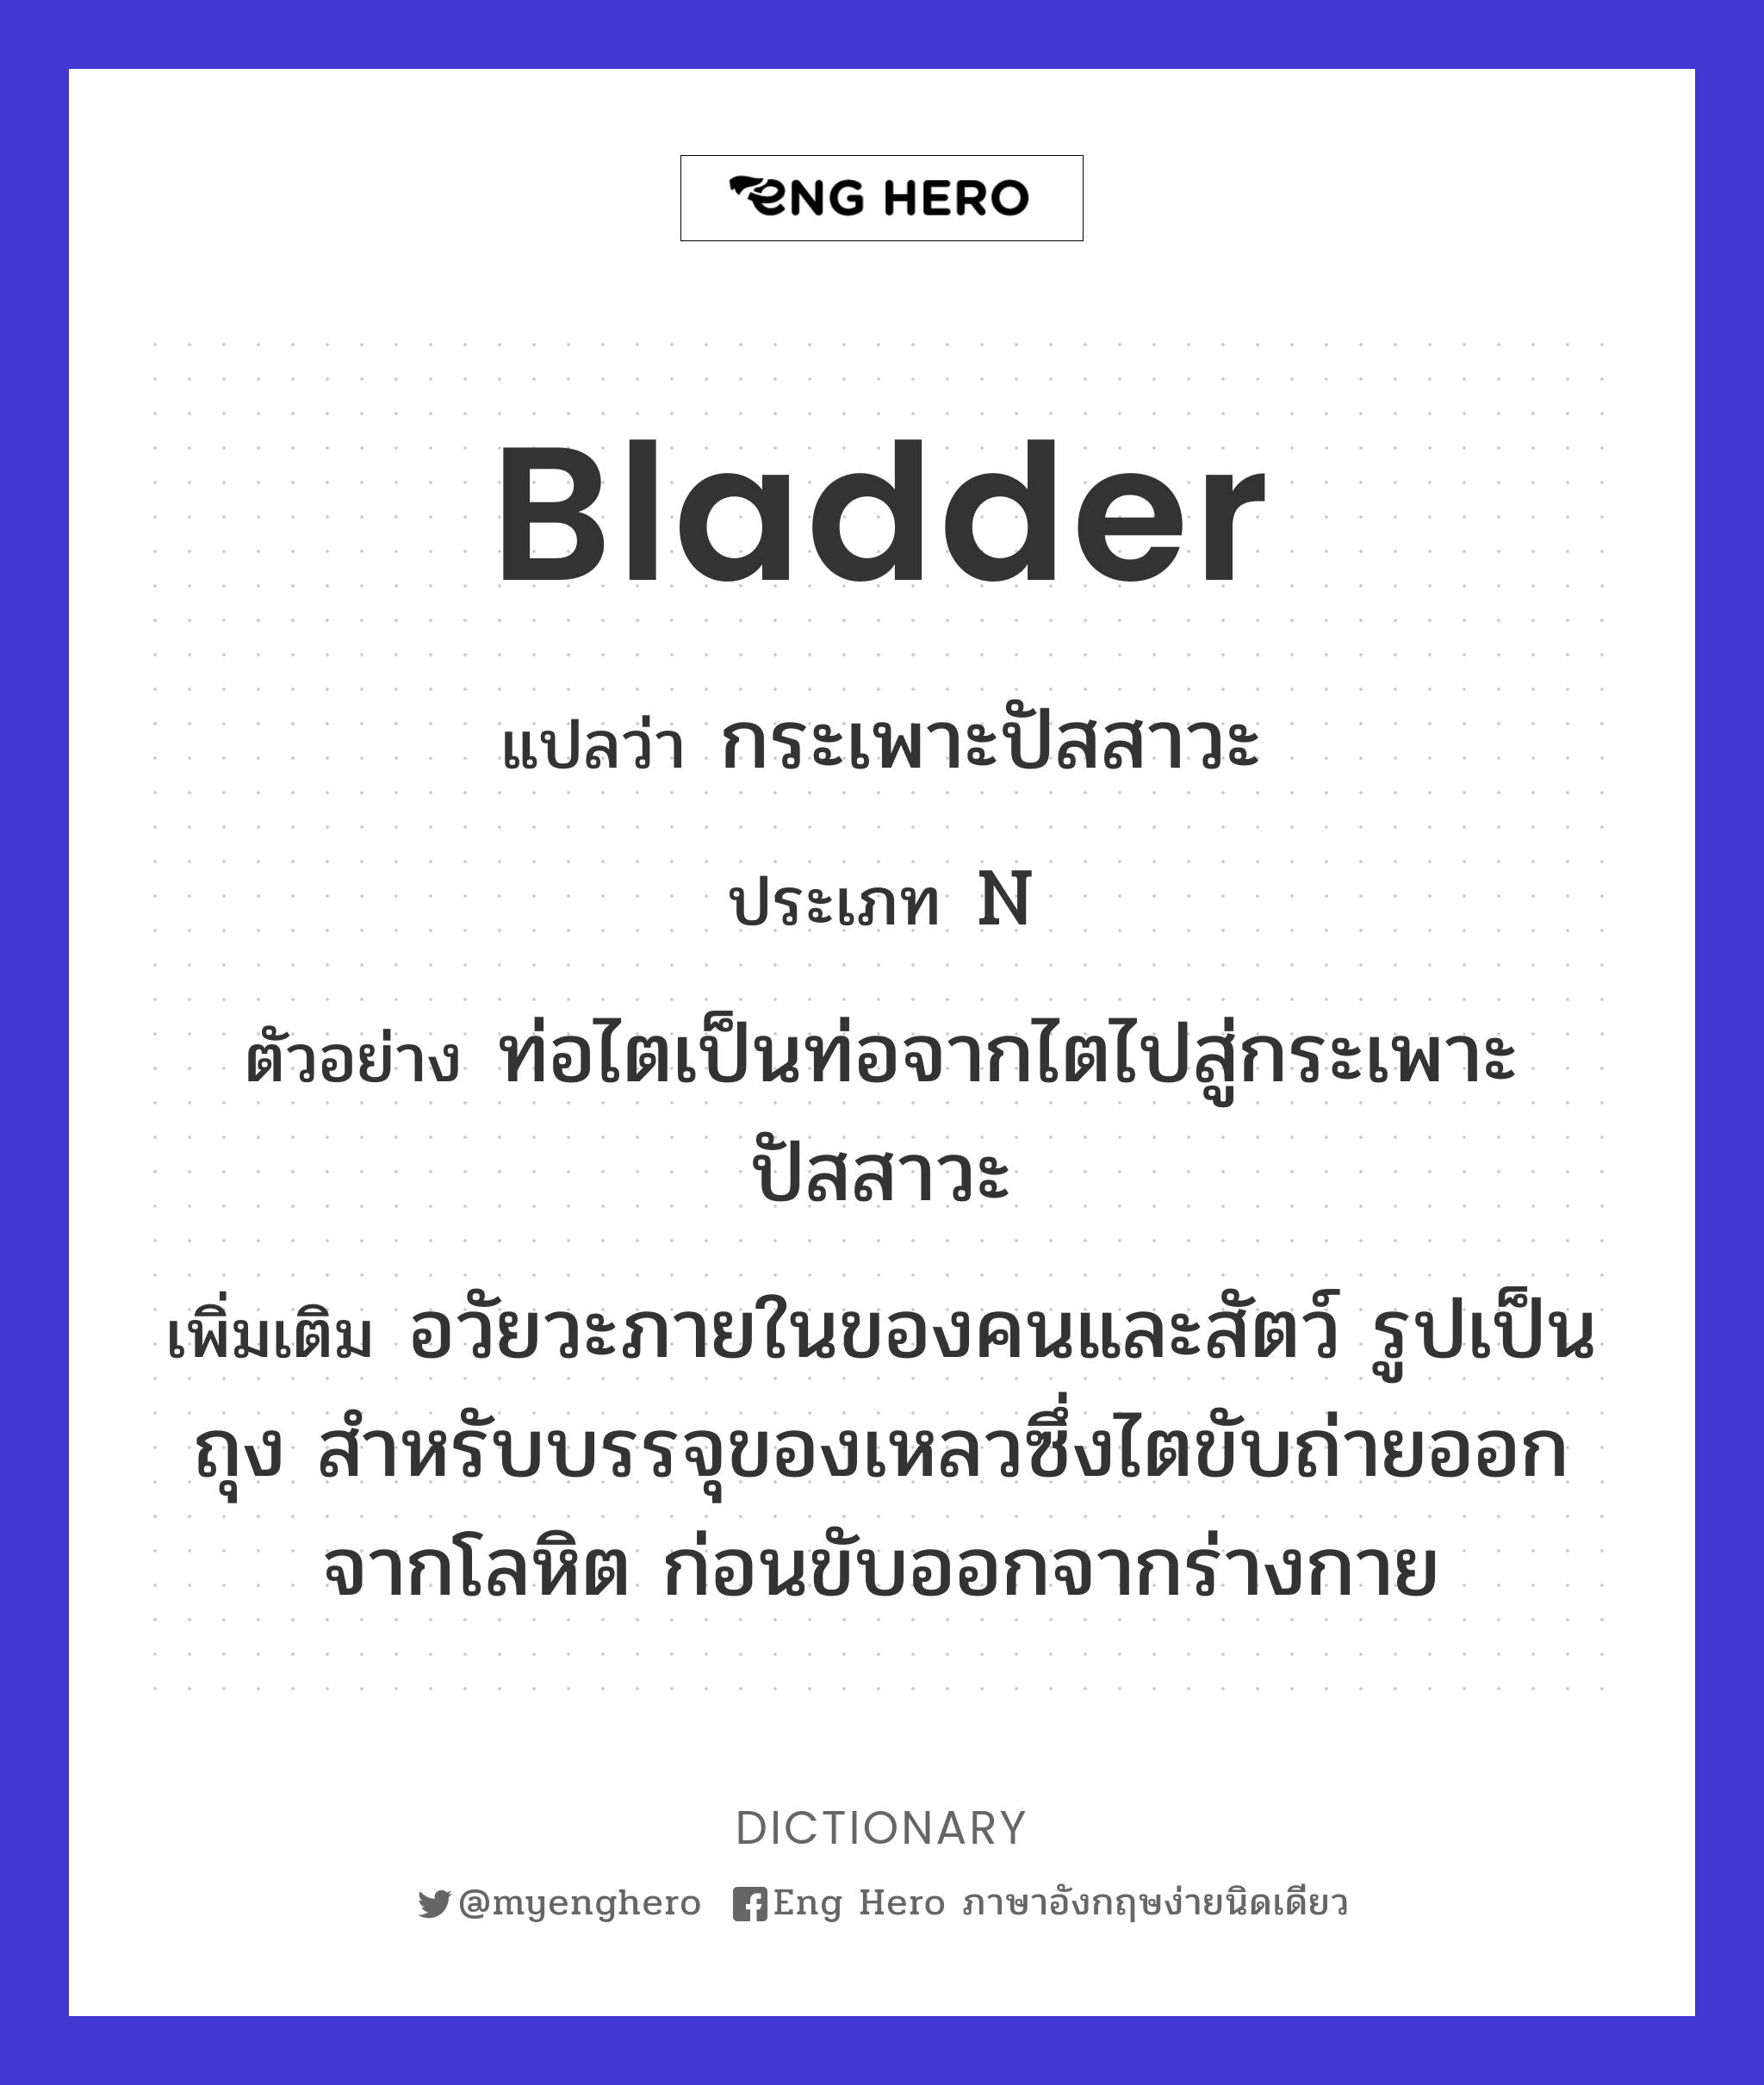 bladder